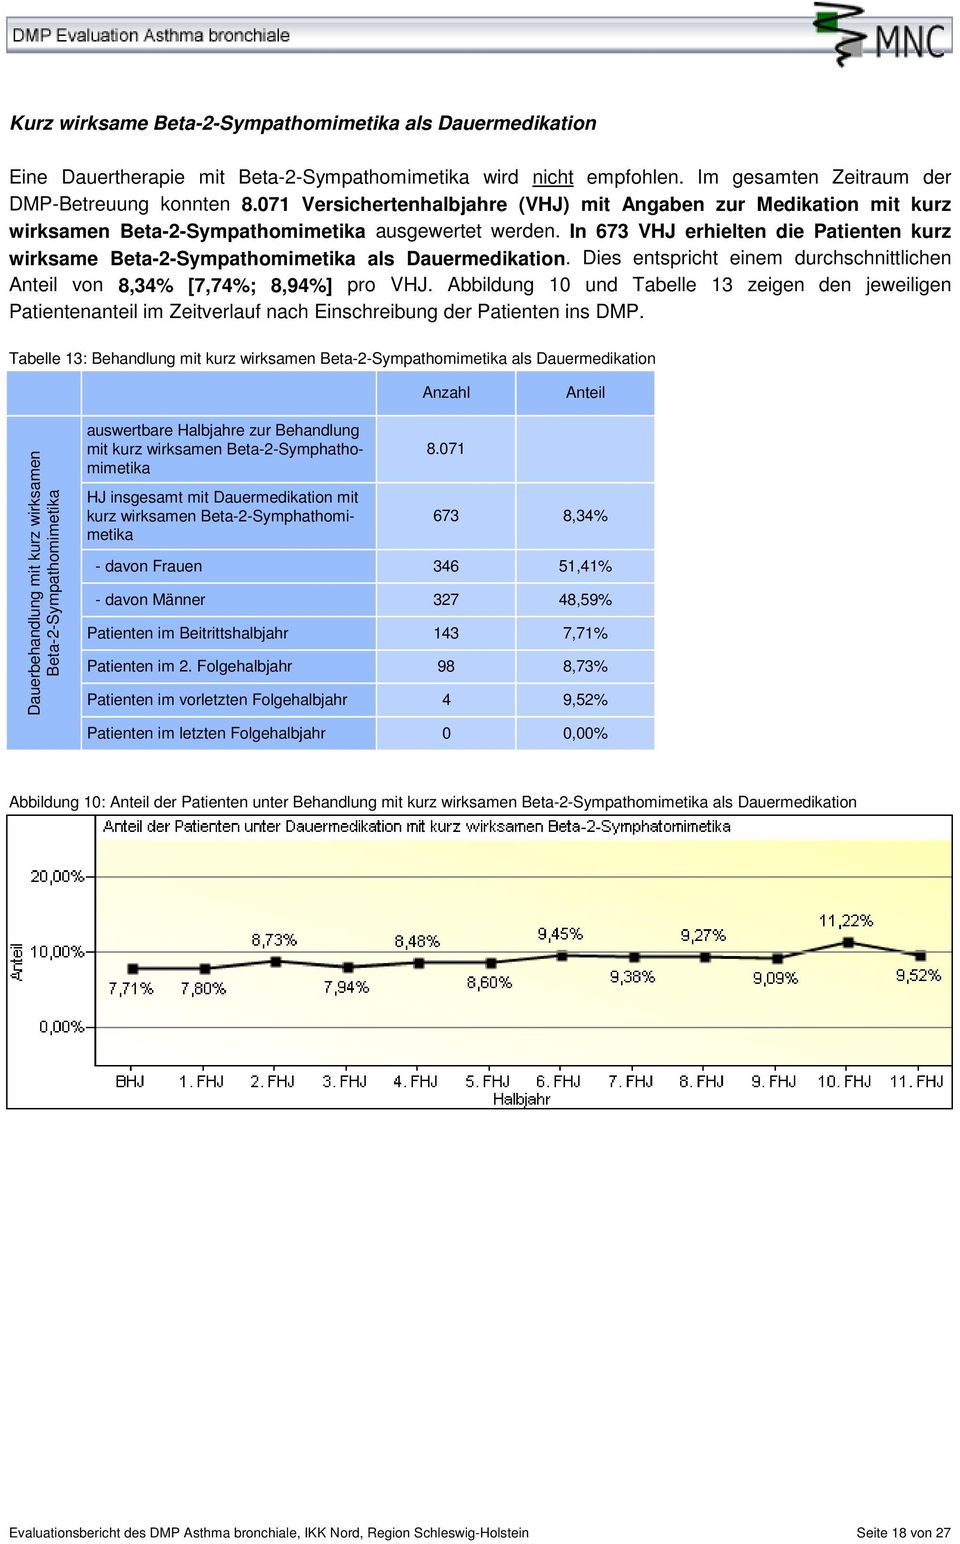 In 673 VHJ erhielten die Patienten kurz wirksame Beta-2-Sympathomimetika als Dauermedikation. Dies entspricht einem durchschnittlichen von 8,34% [7,74%; 8,94%] pro VHJ.